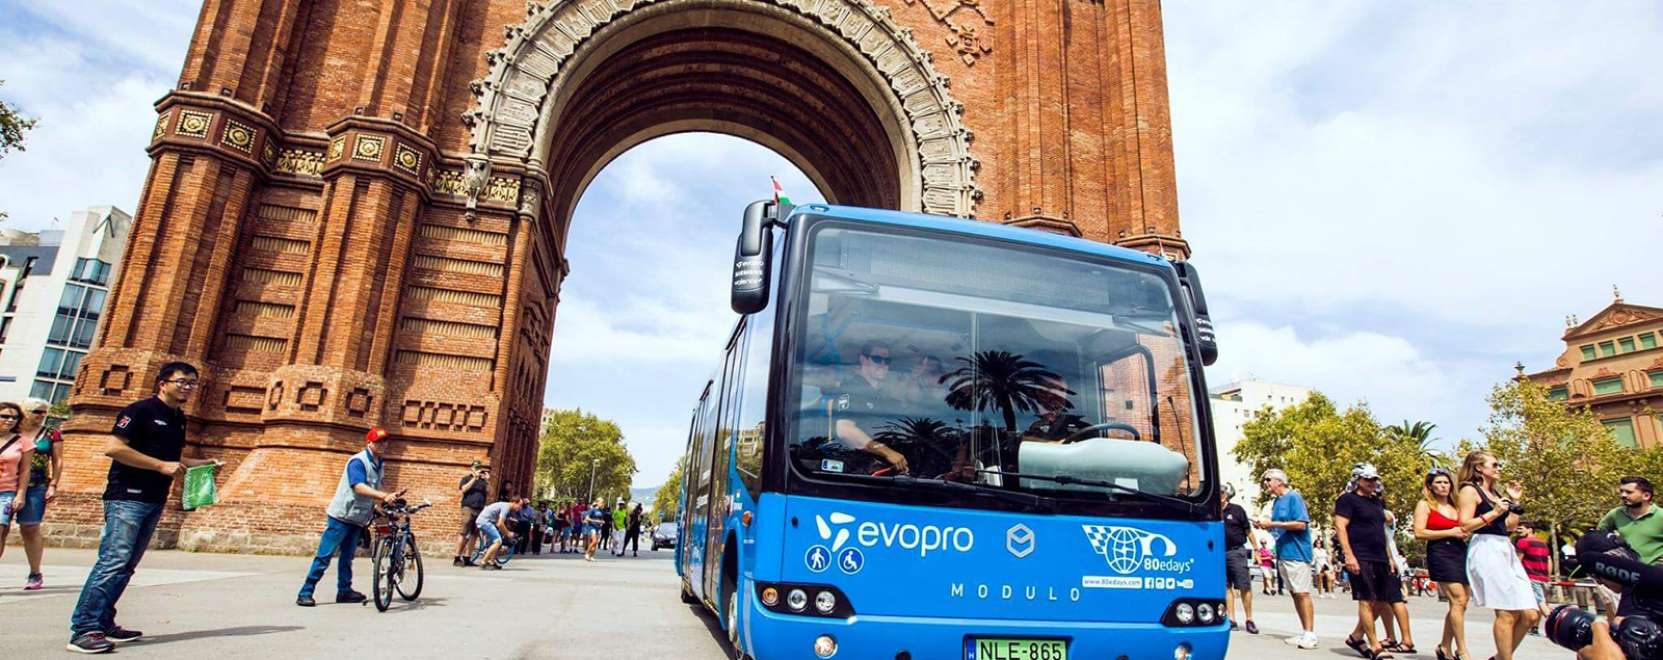 Hazaért a világ körüli útról a magyar e-busz